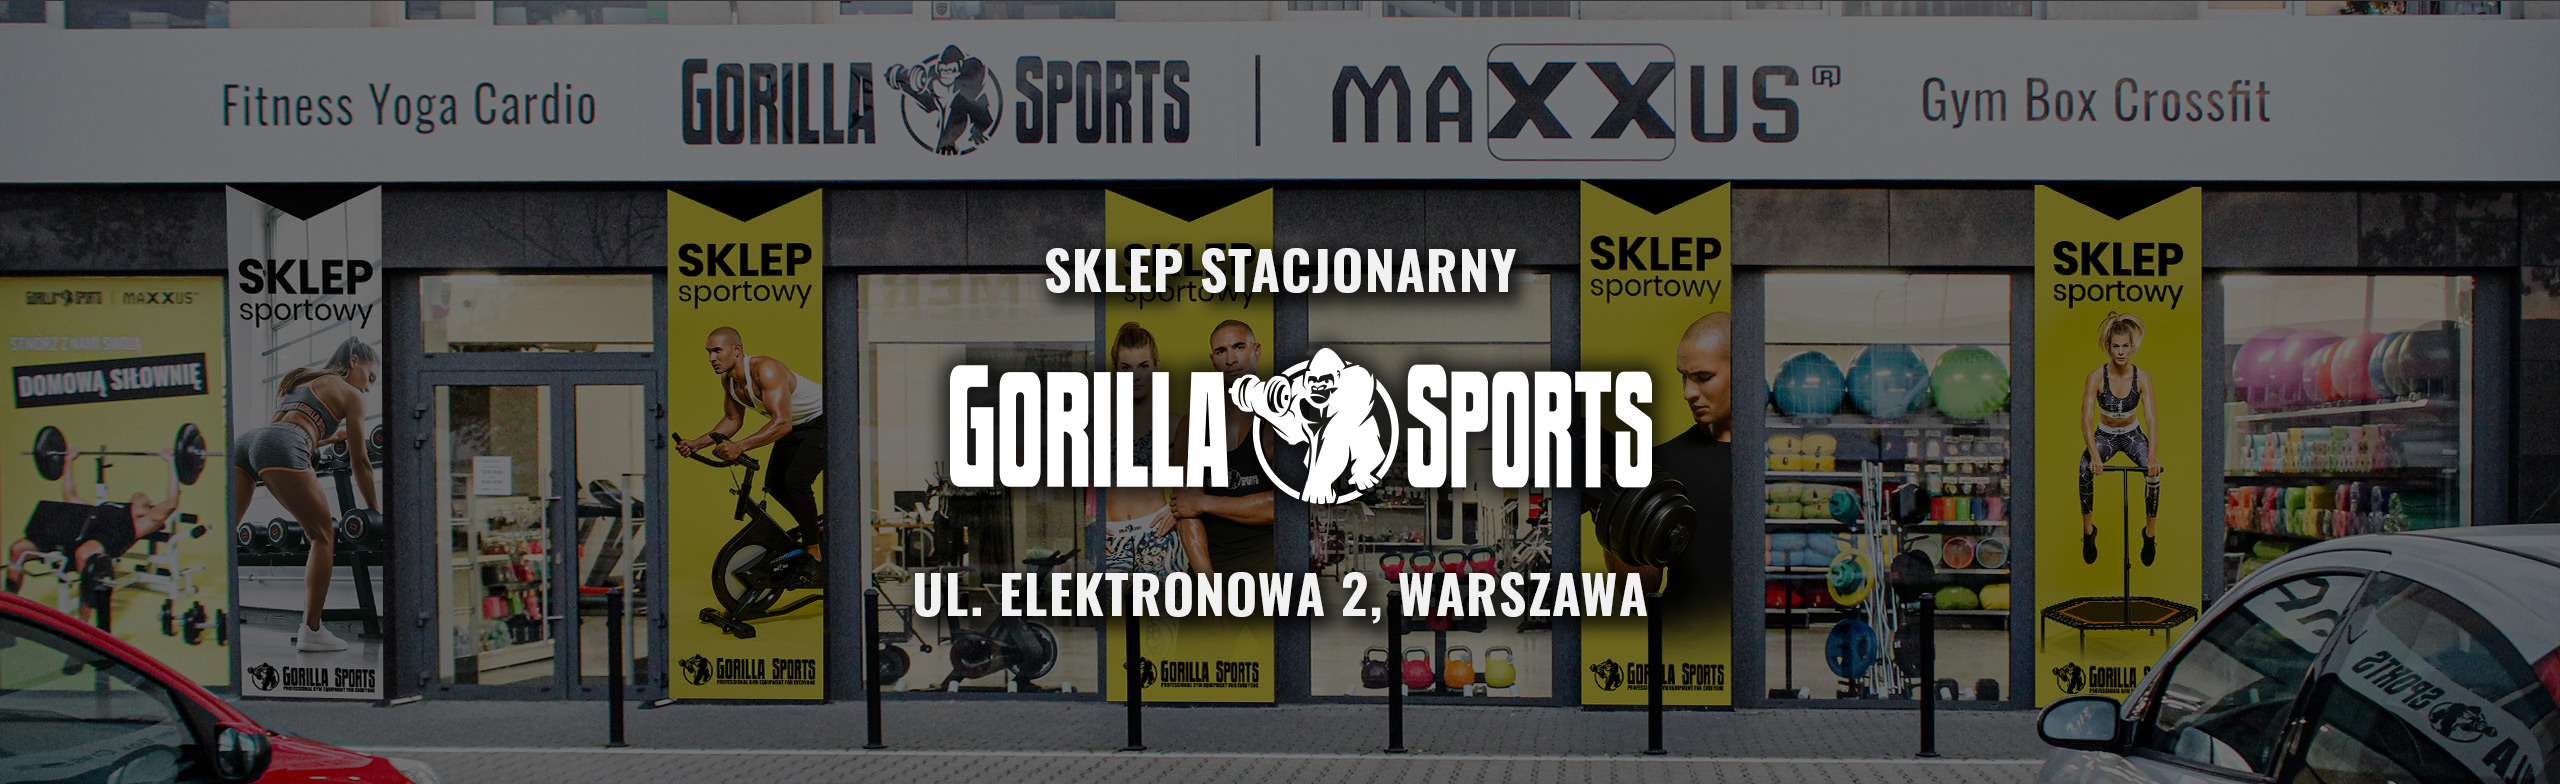 Sklep Stacjonarny Gorilla Sports 